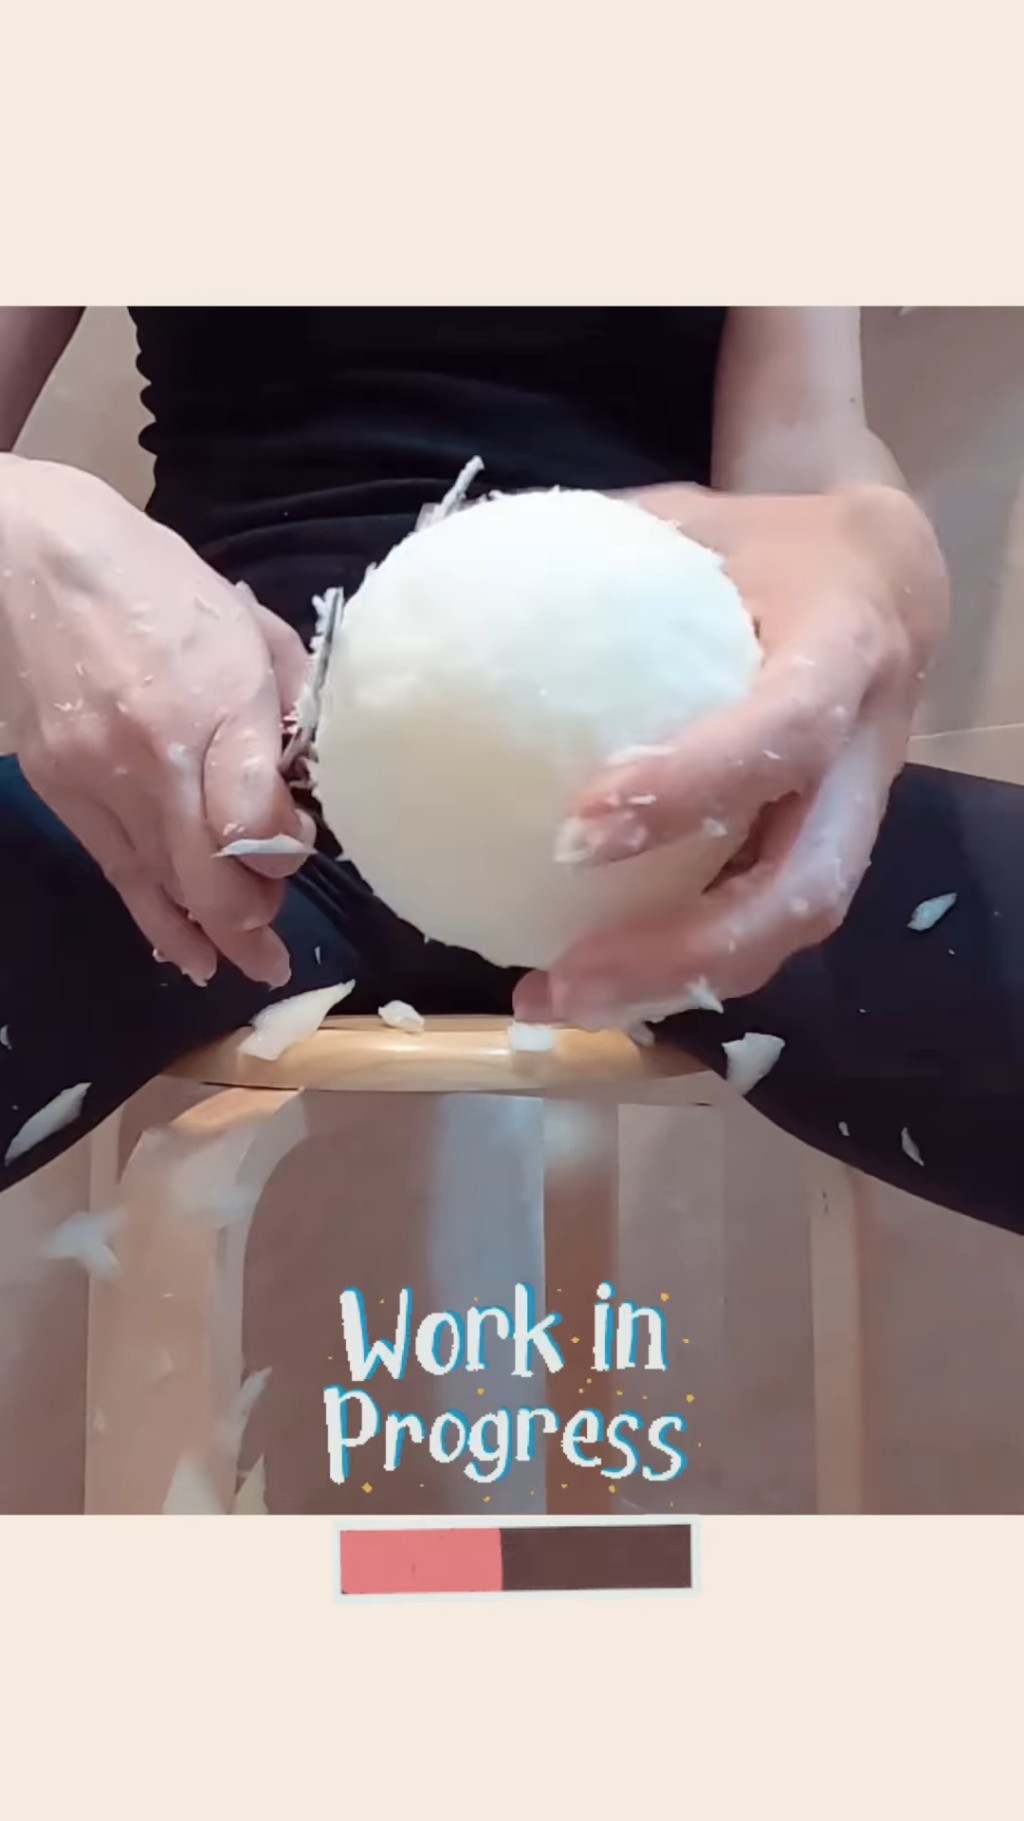 另一段短片見到簡幕華她將正方體的海綿剪成球狀。